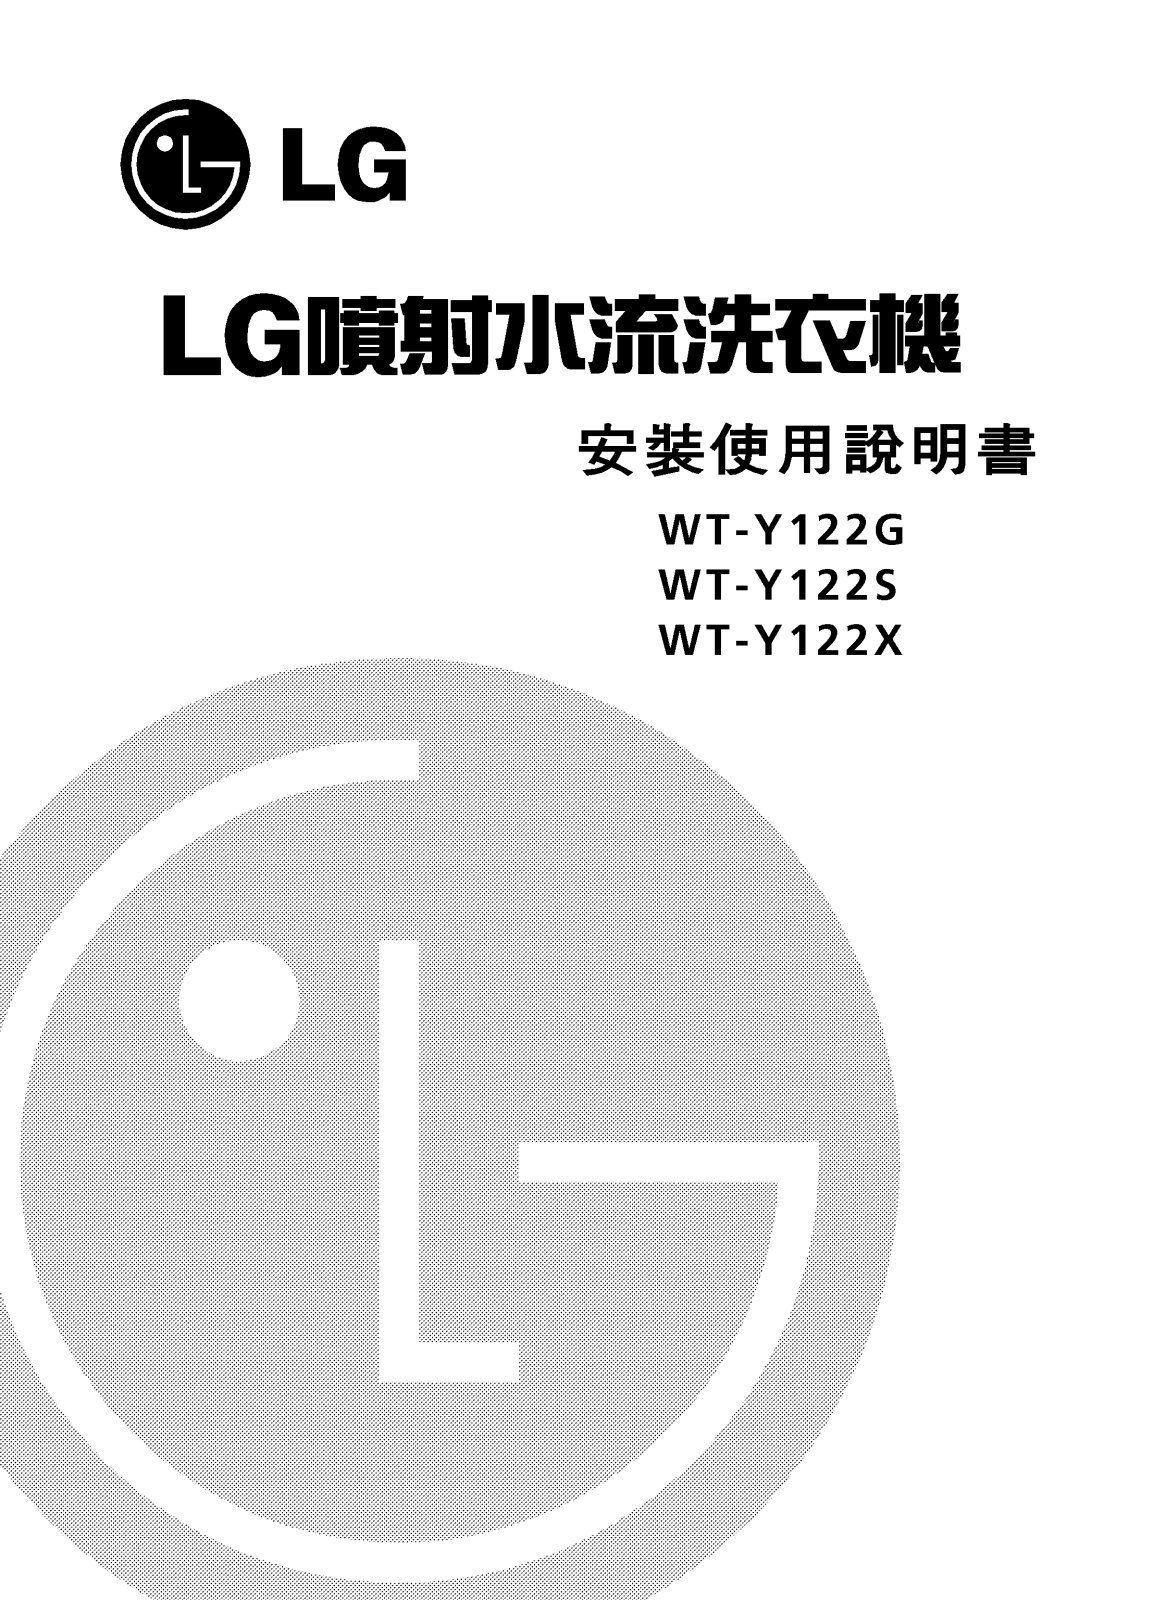 Lg WT-Y122X, WT-Y122S, WT-Y122G Manual